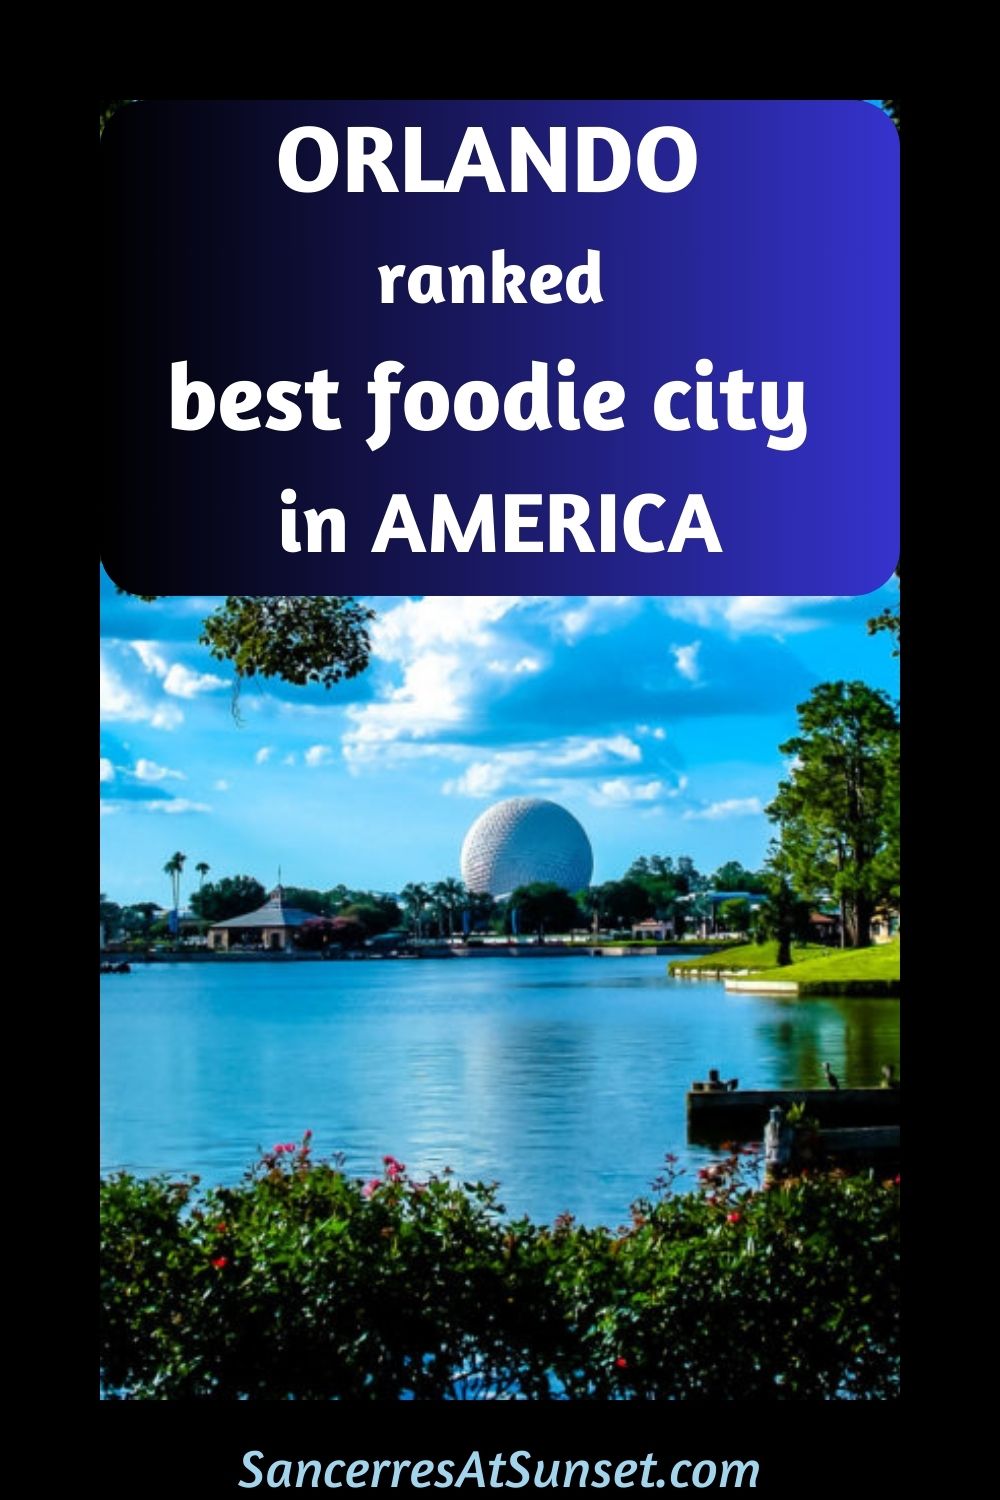 Orlando Ranked Best Foodie City in America